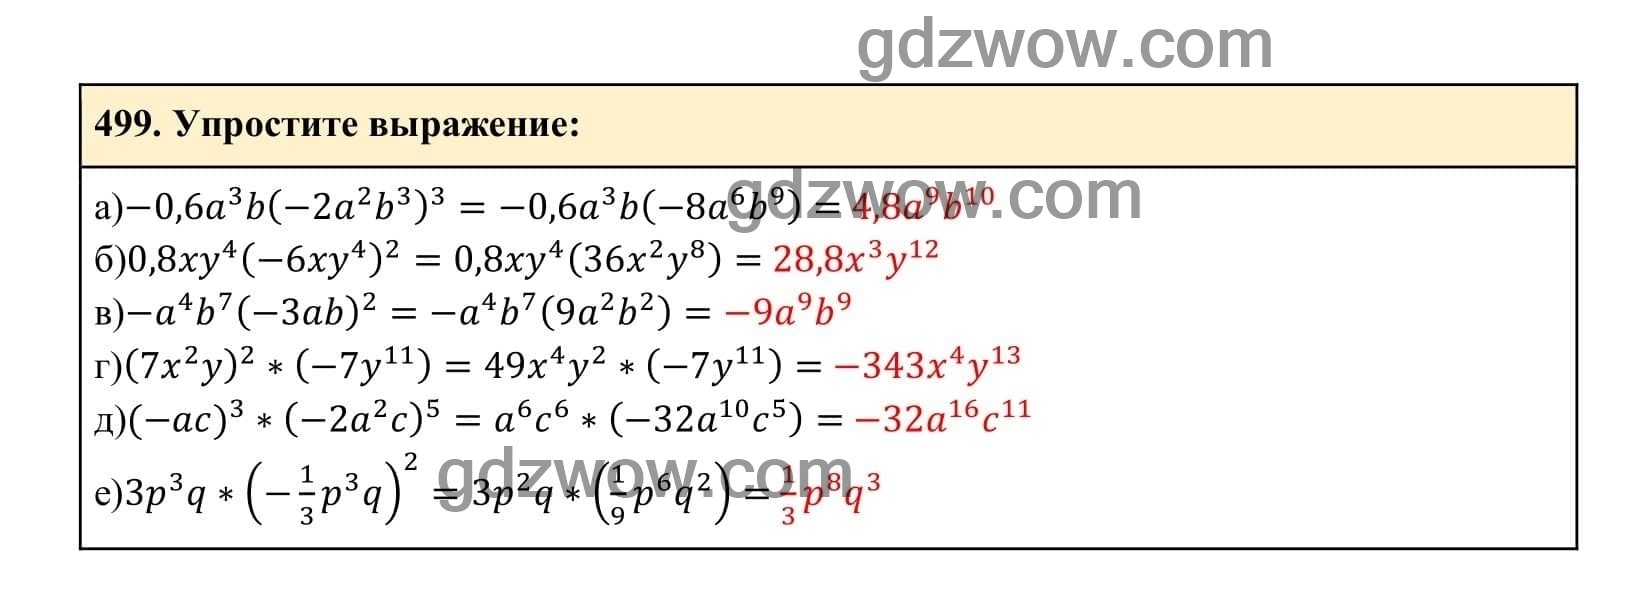 Упражнение 499 - ГДЗ по Алгебре 7 класс Учебник Макарычев (решебник) - GDZwow